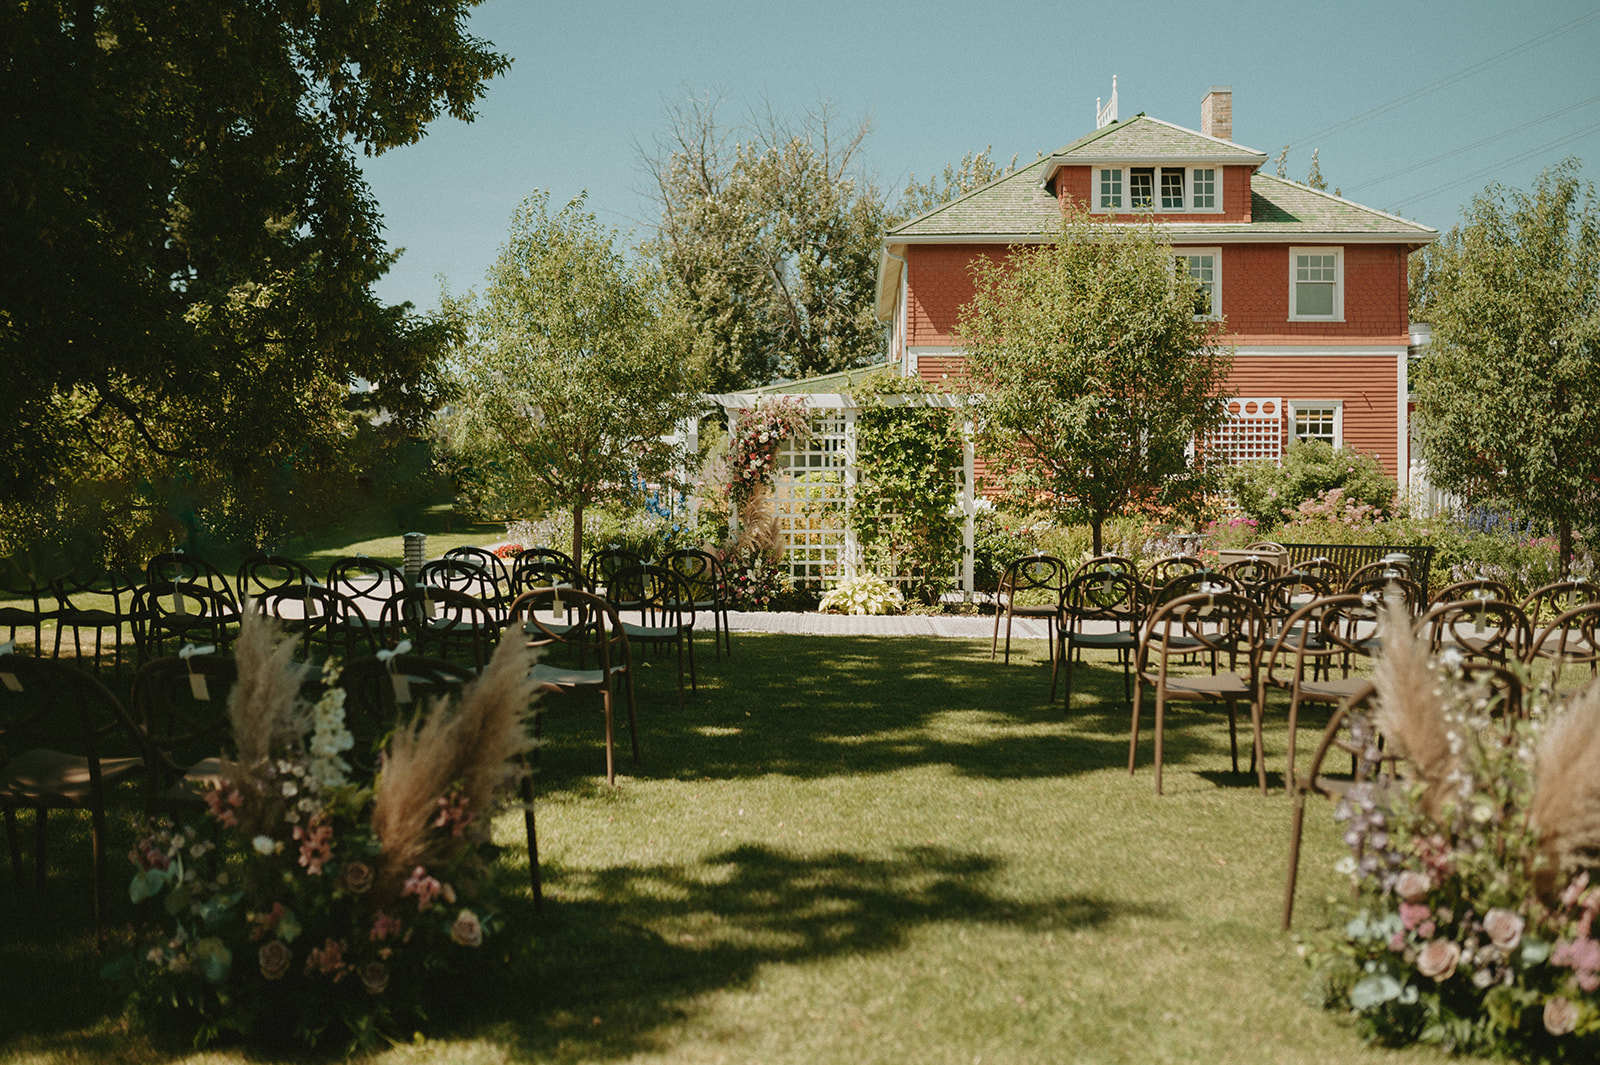 Gardenesque wedding ceremony decor inspiration for the boho Albertan bride